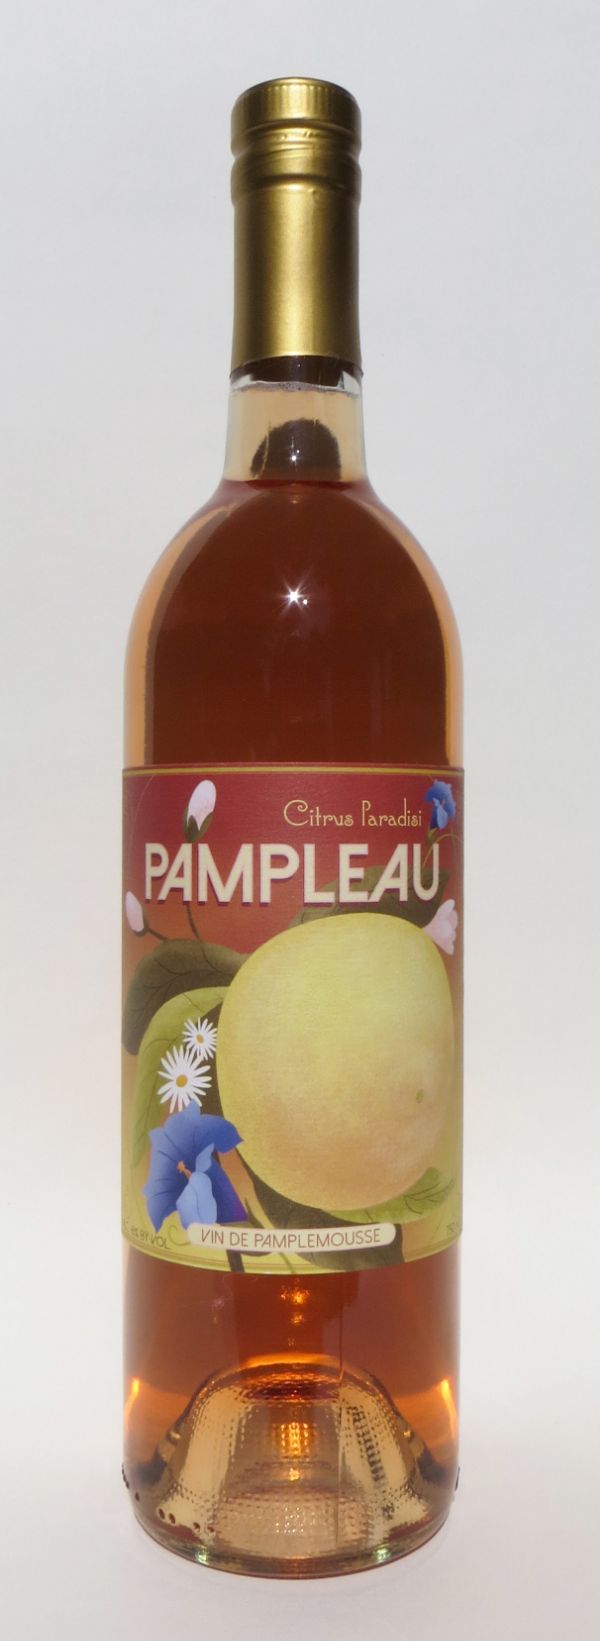 Buy Pampleau Vin De Pamplemousse 16% Online -Craft City